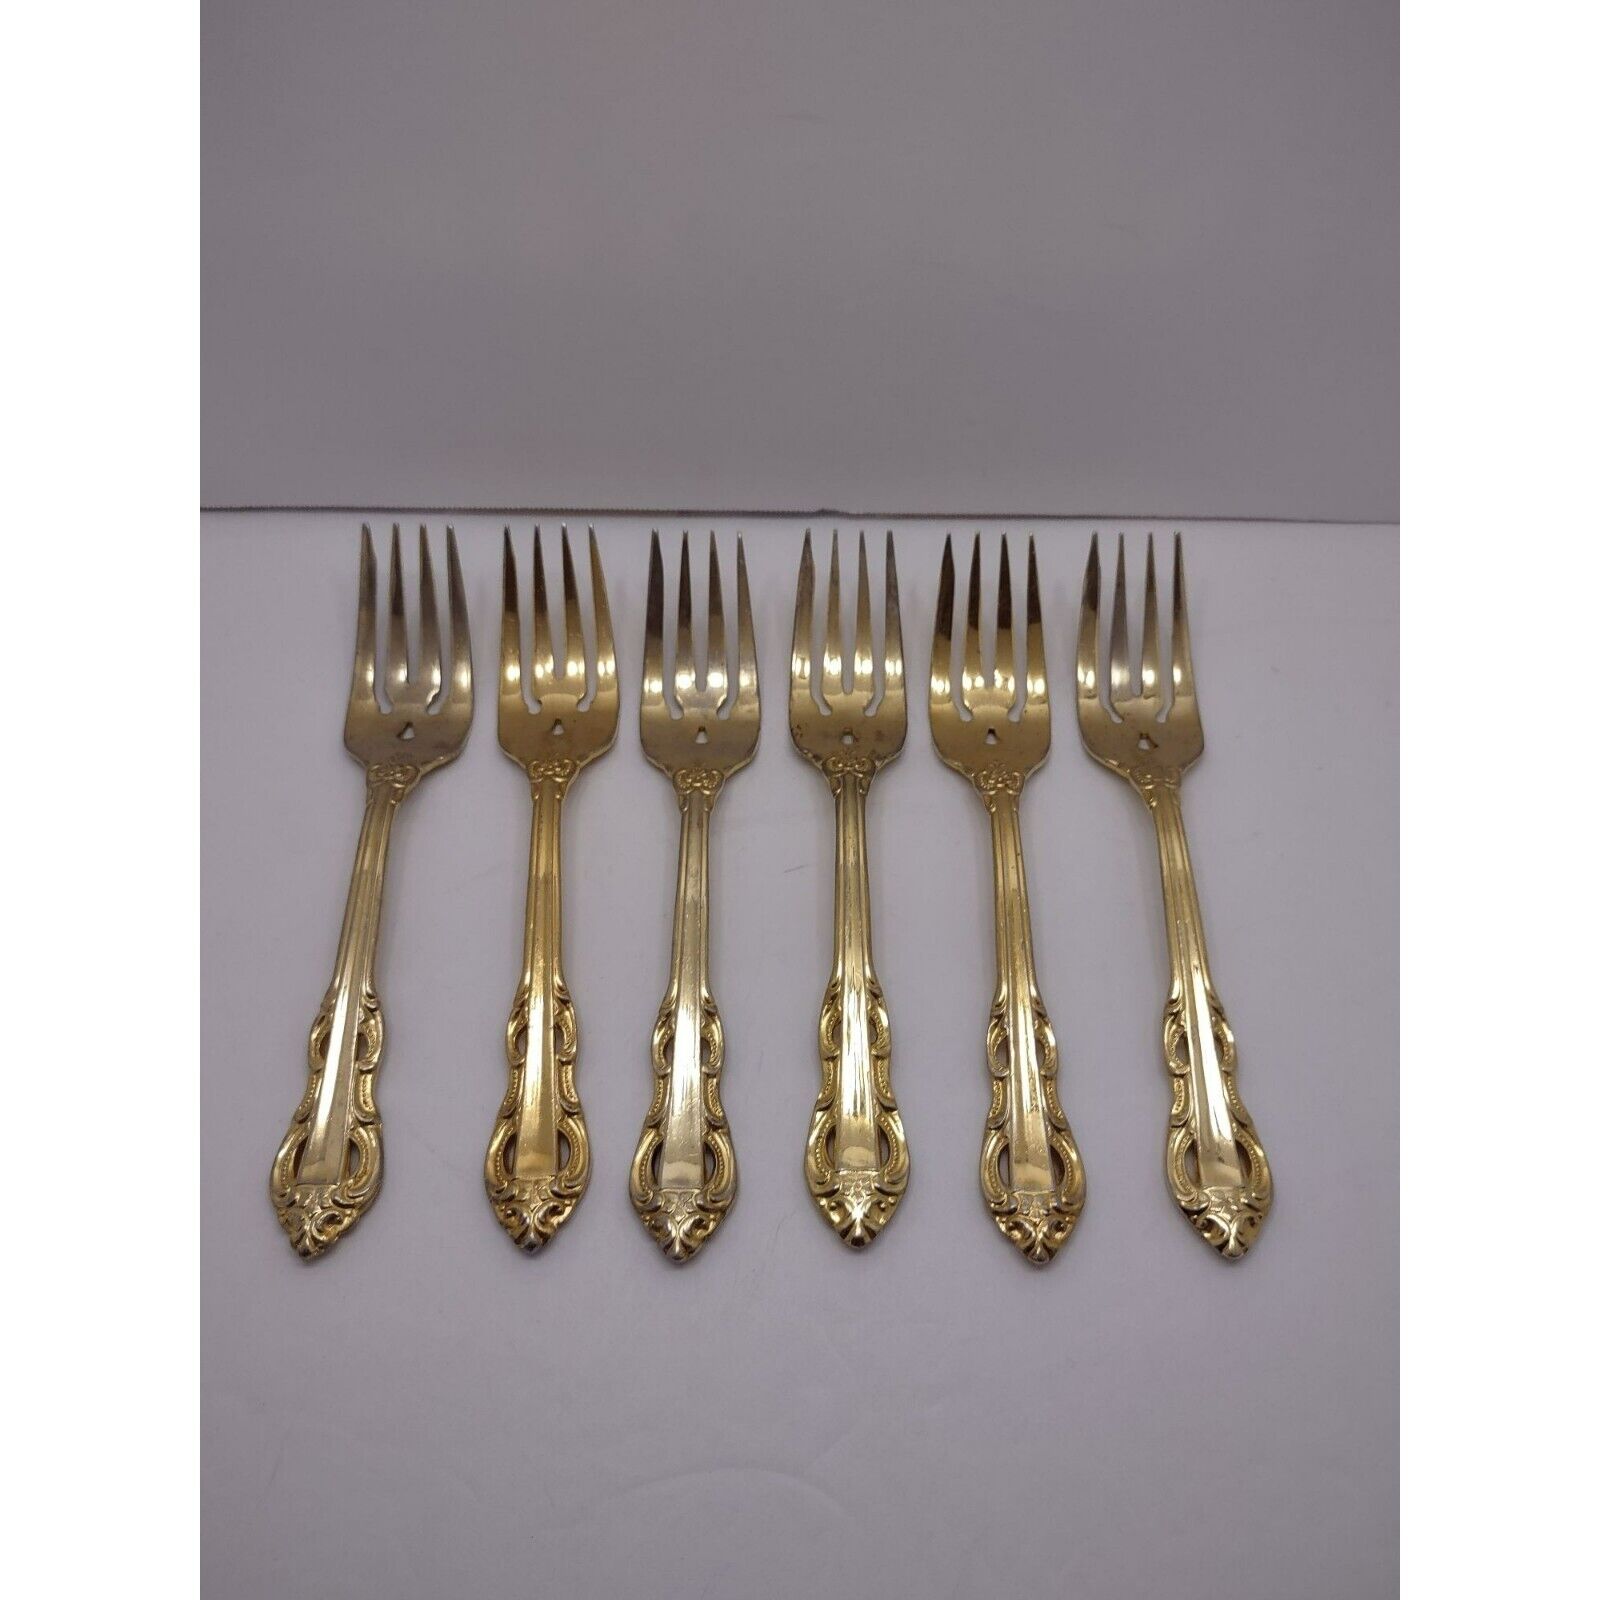 Vintage 1988 Korea Supreme Cutlery Towle gold wash forks King Arthur